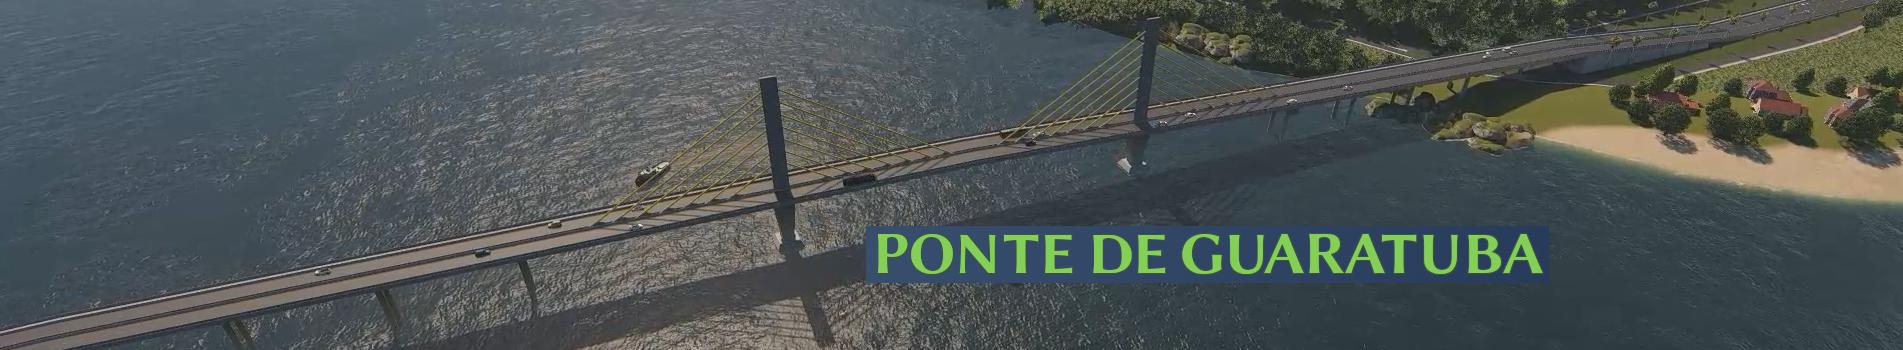 Imagem da maquete digital da Ponte de Guaratuba